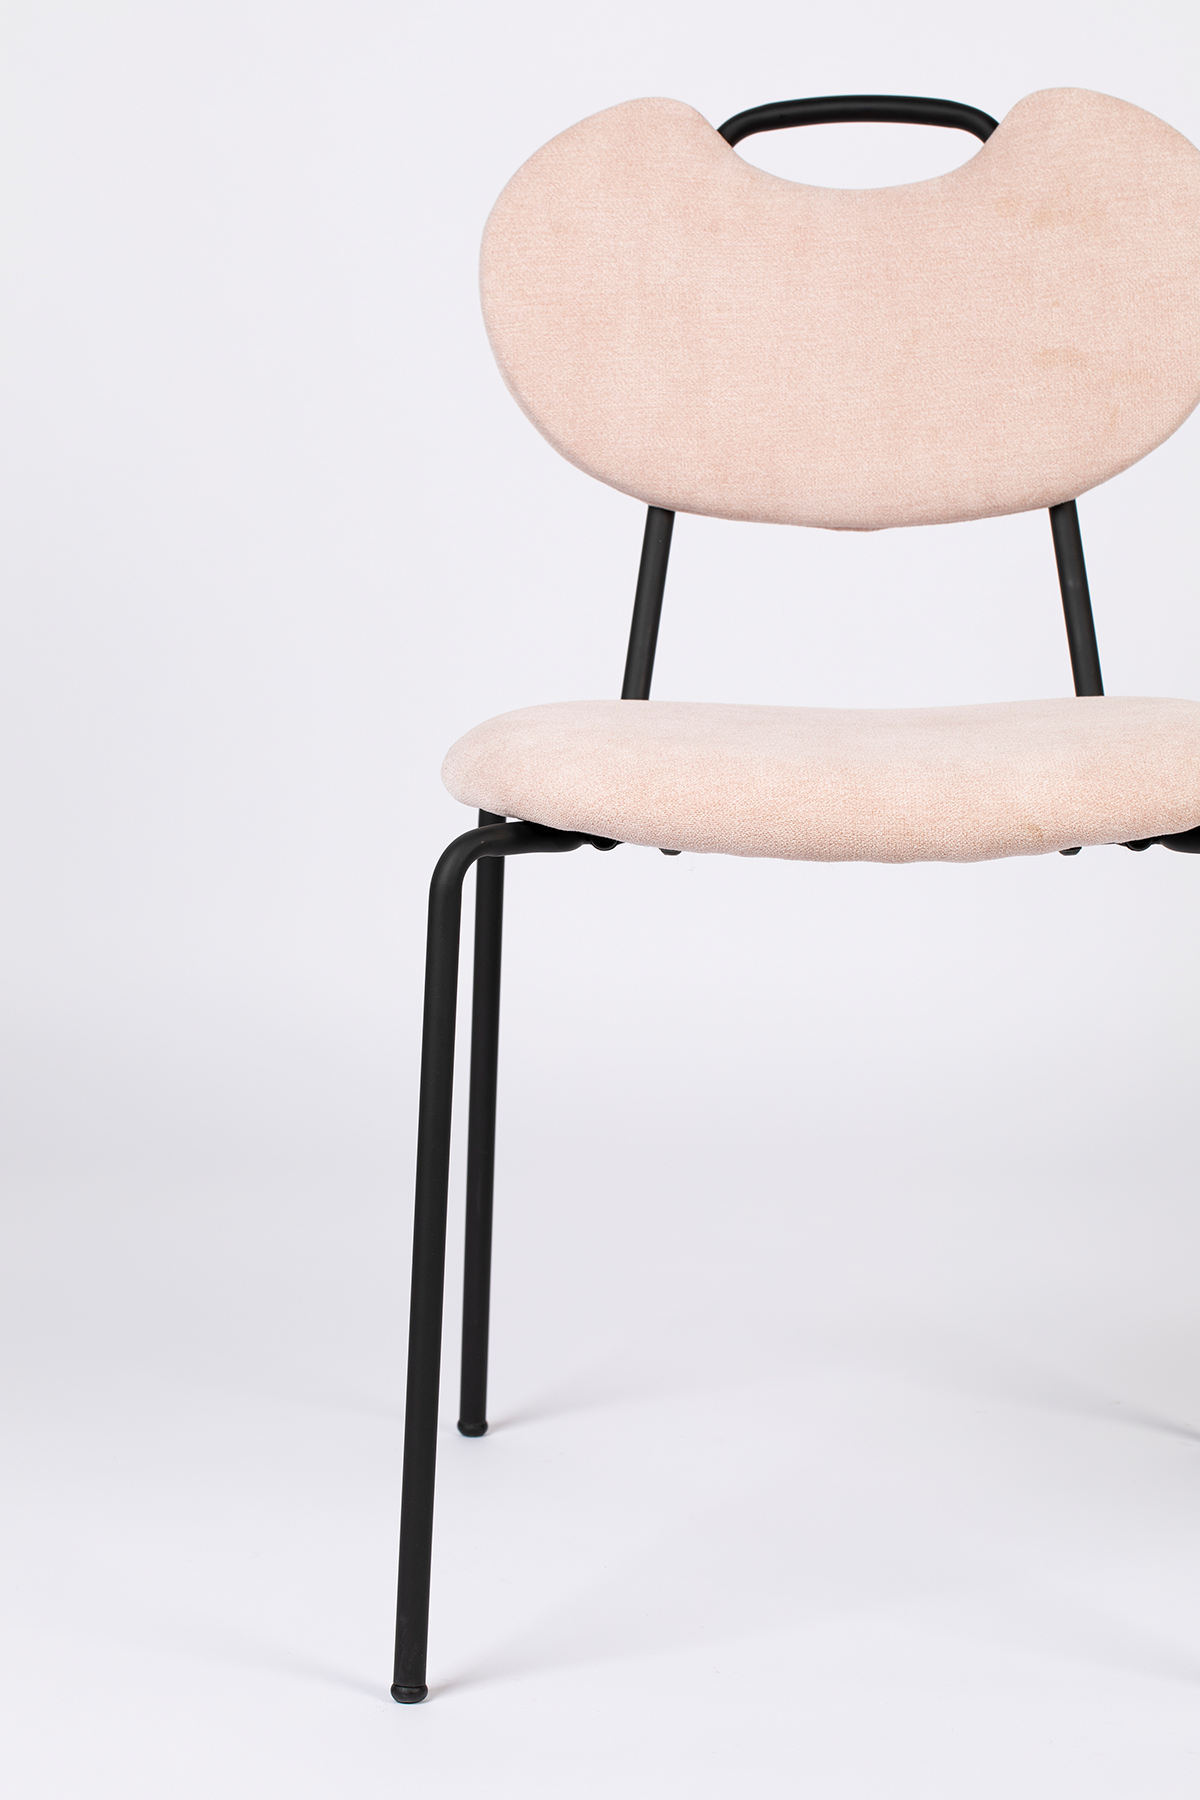 Stuhl Aspen gepolstert - KAQTU Design